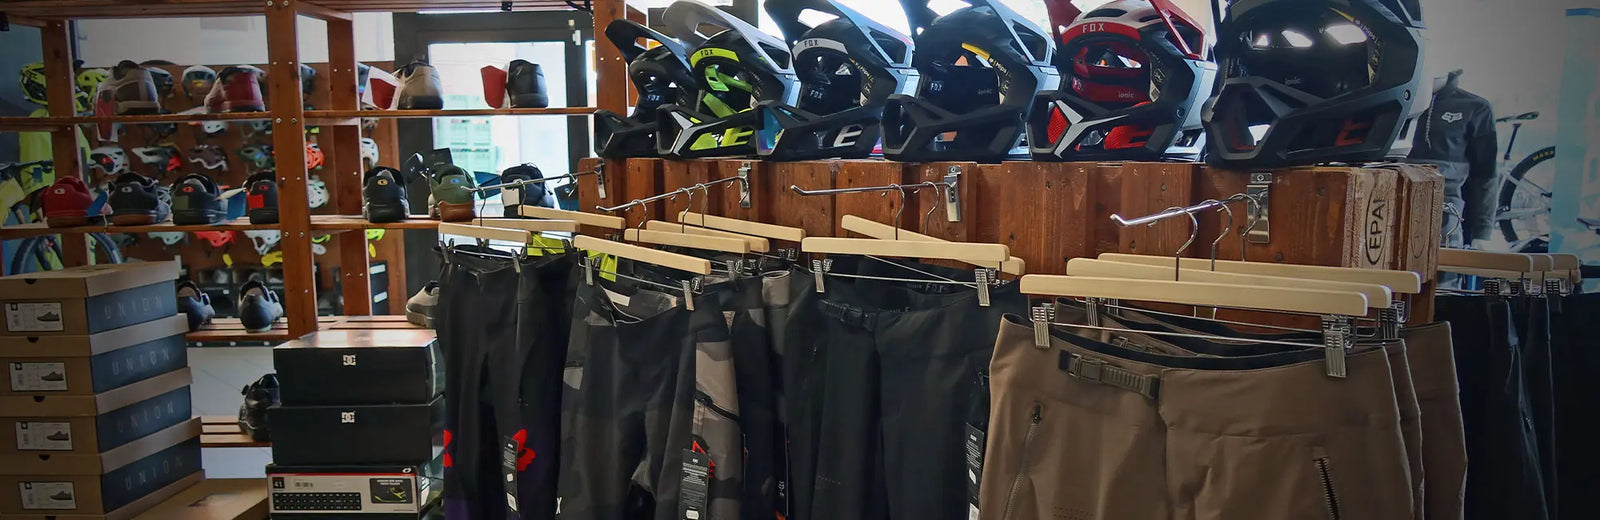 DottorBike è un negozio specializzato nella vendita di abbigliamento ciclismo a Pisa